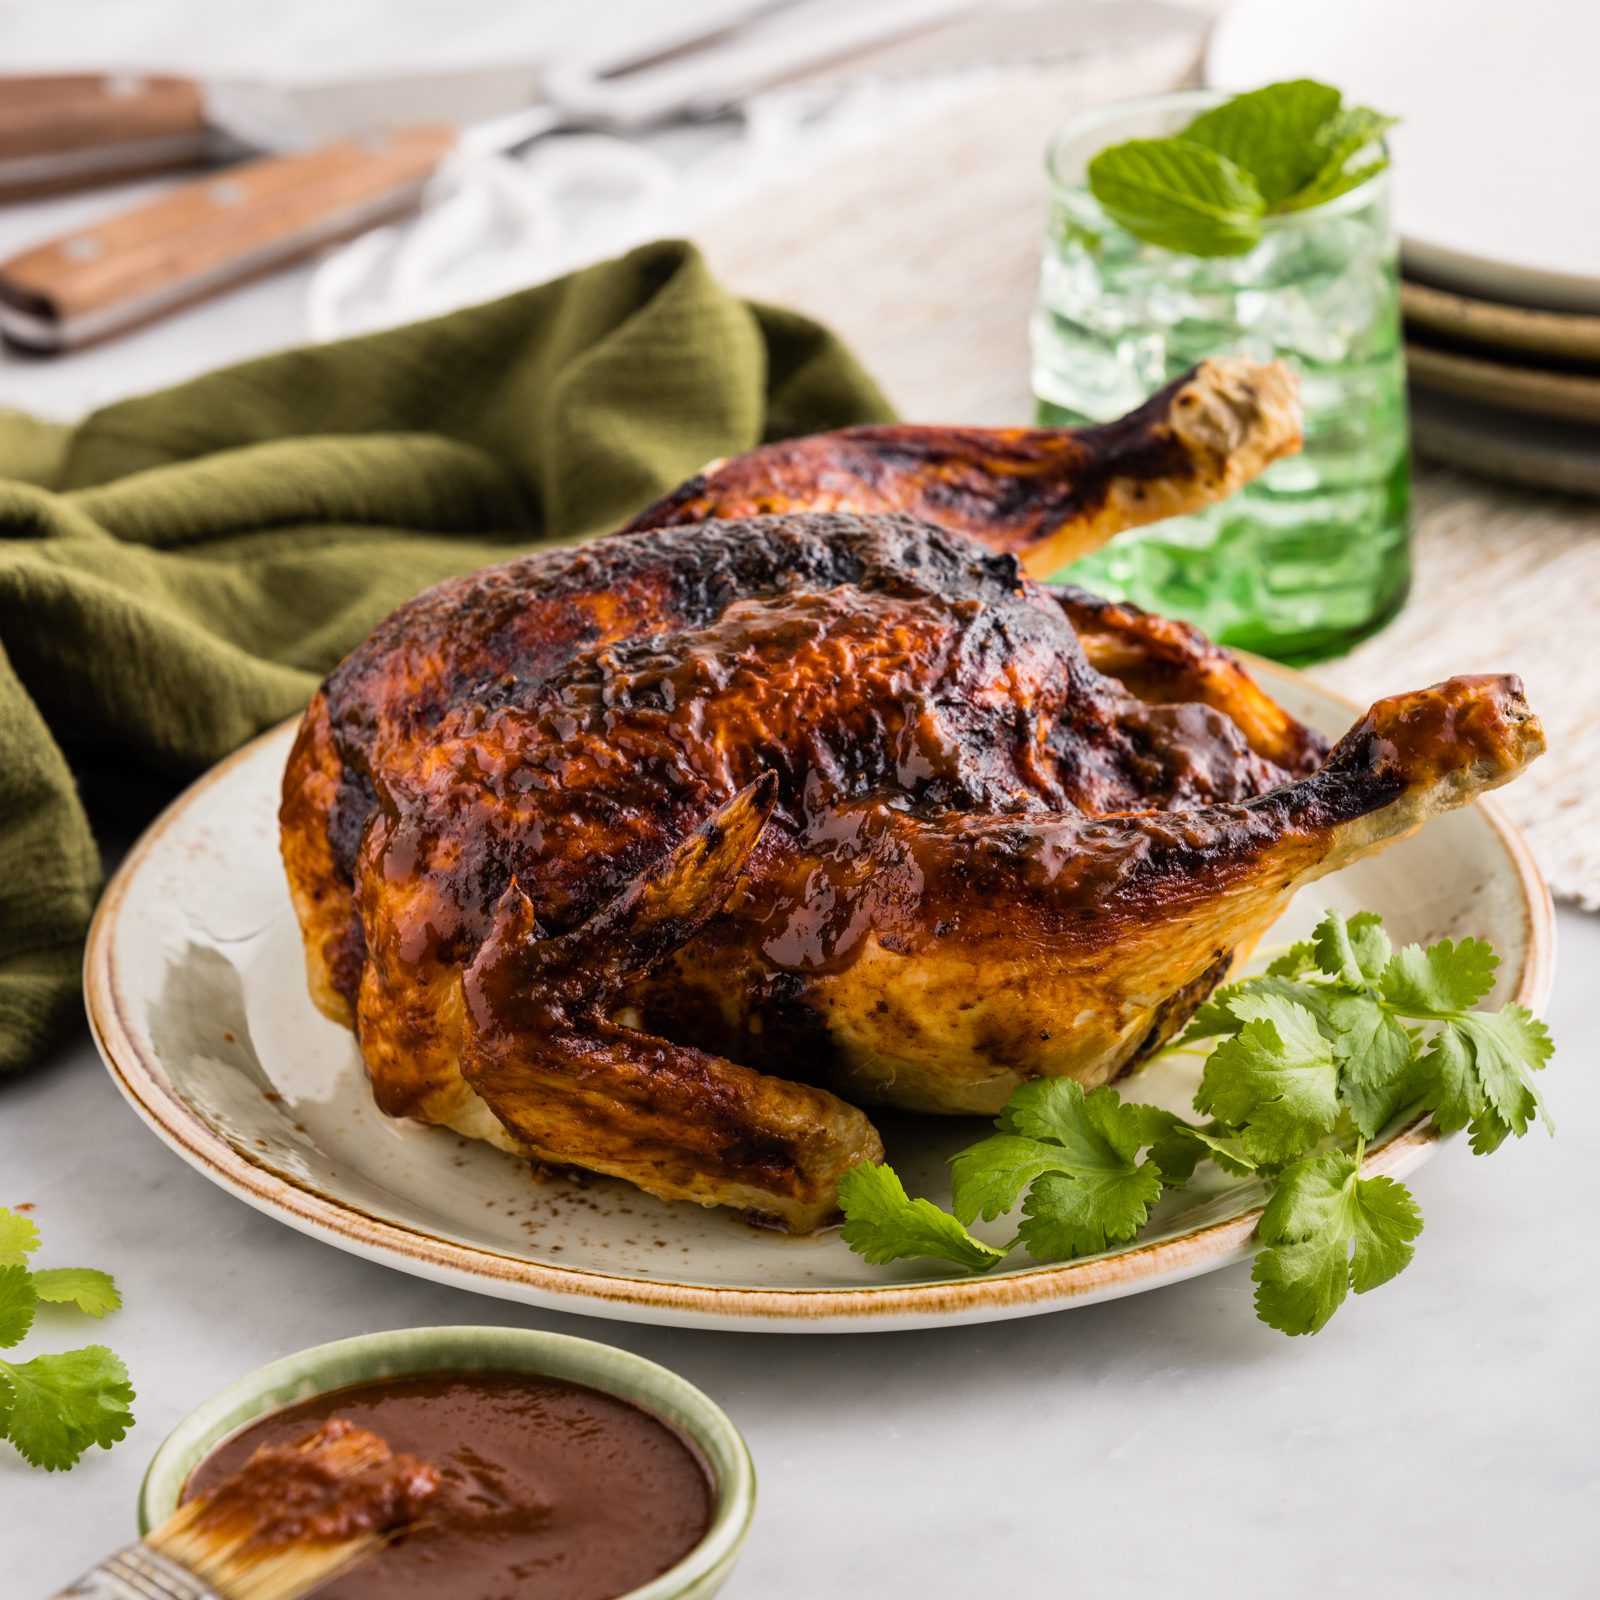 FS airfryer recipes 20210813 0347 roast chicken